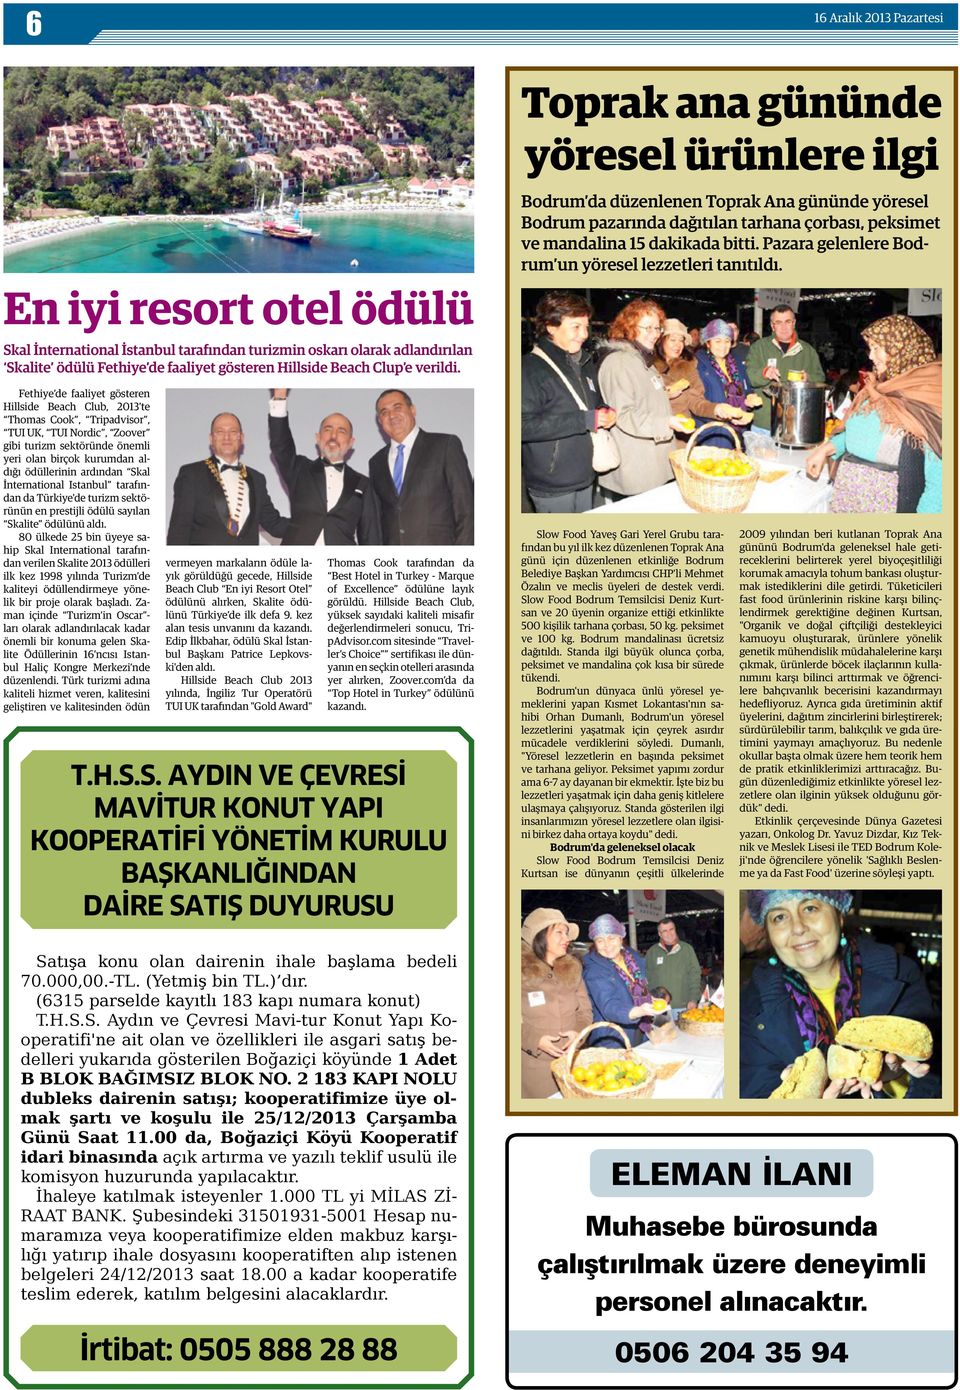 En iyi resort otel ödülü Skal İnternational İstanbul tarafından turizmin oskarı olarak adlandırılan Skalite ödülü Fethiye de faaliyet gösteren Hillside Beach Clup e verildi.